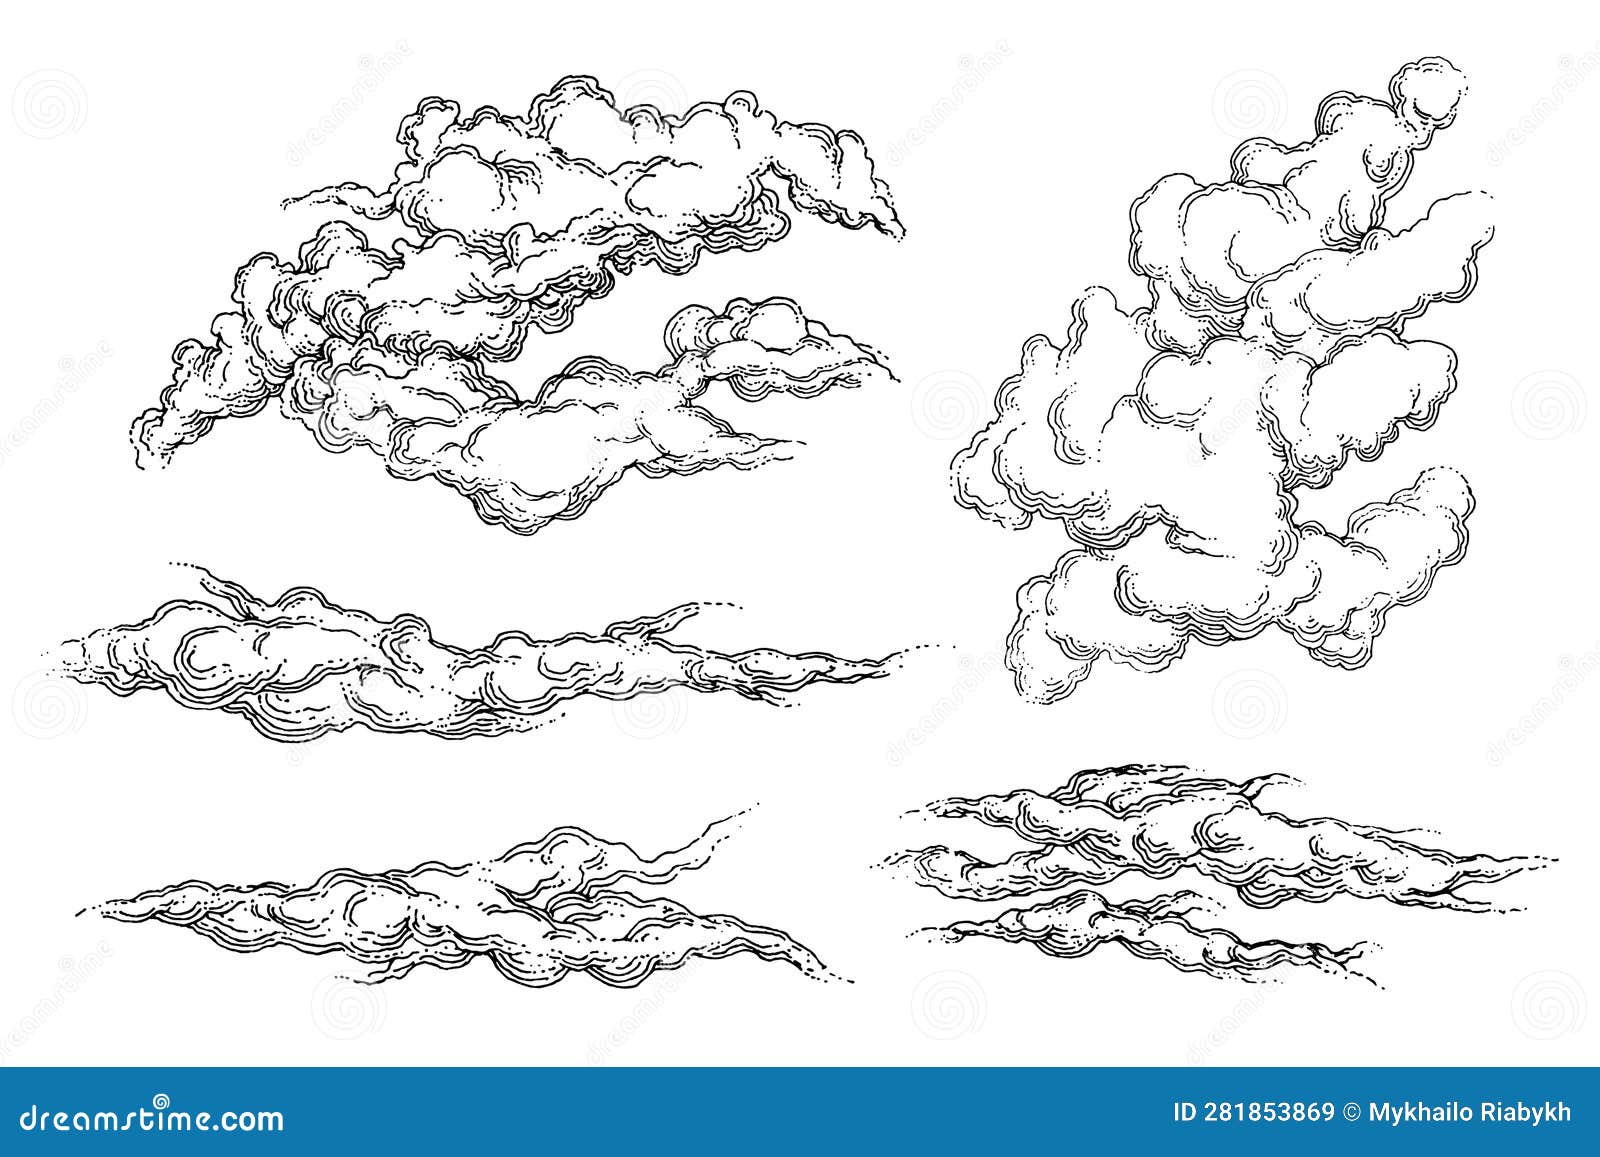 2. "Name In Clouds" Tattoo Ideas - wide 6